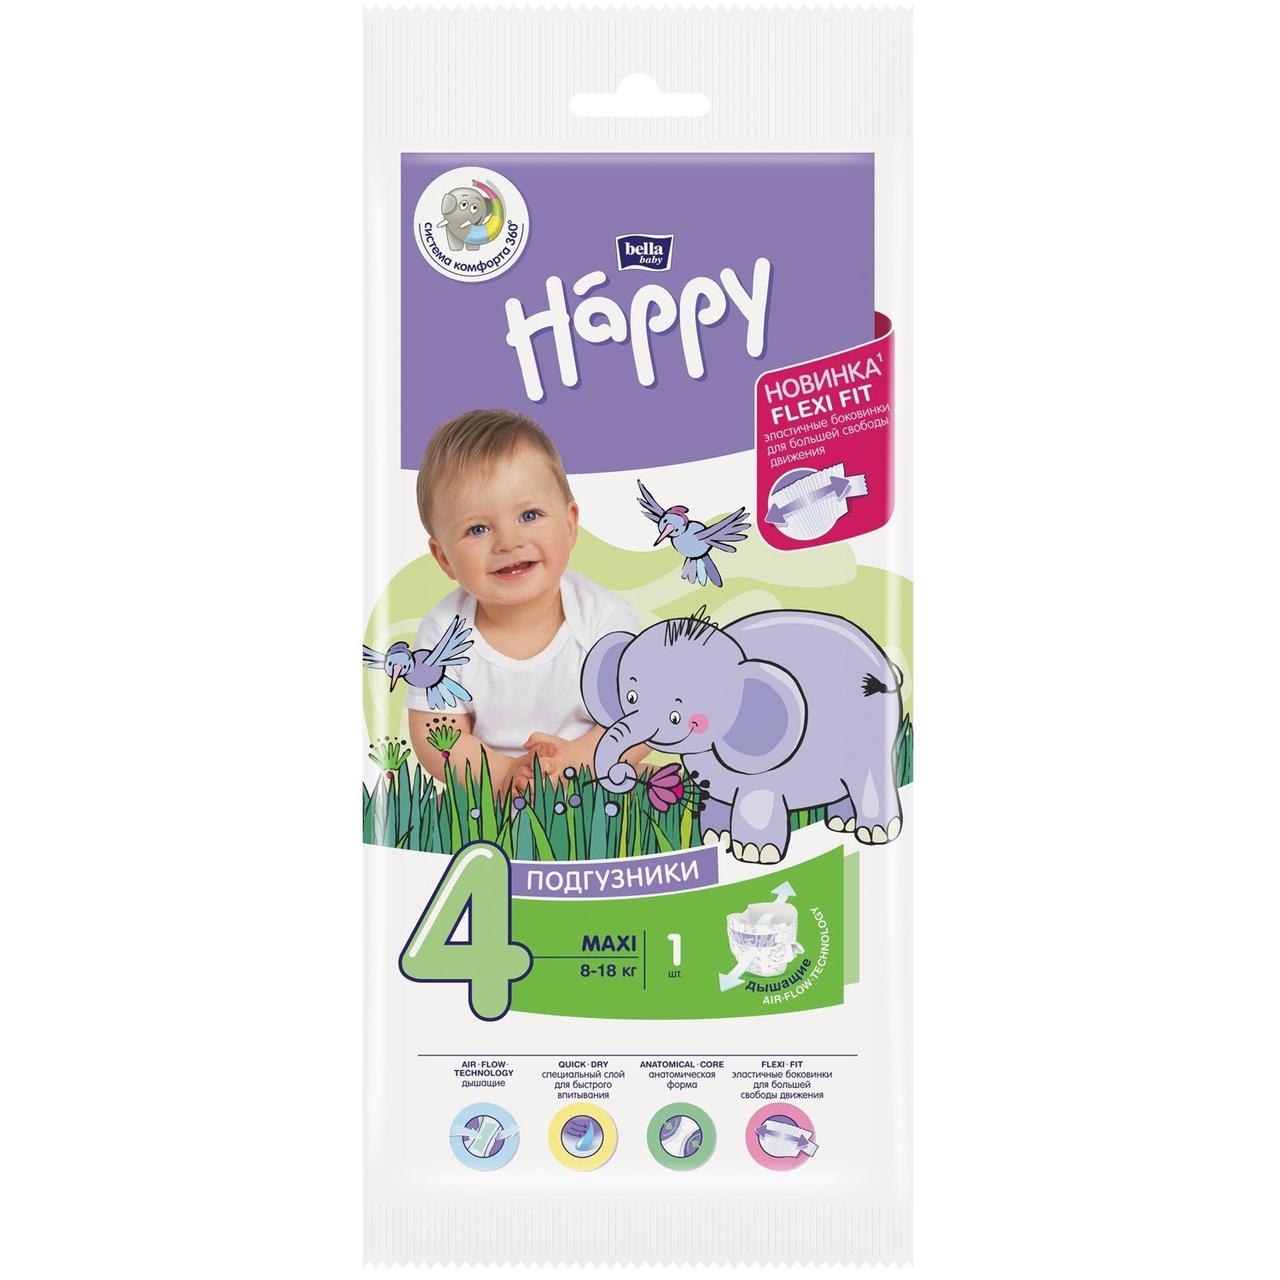 Подгузники Bella Baby Happy Maxi 4 гигиенические для детей 8-18 кг, 1 шт